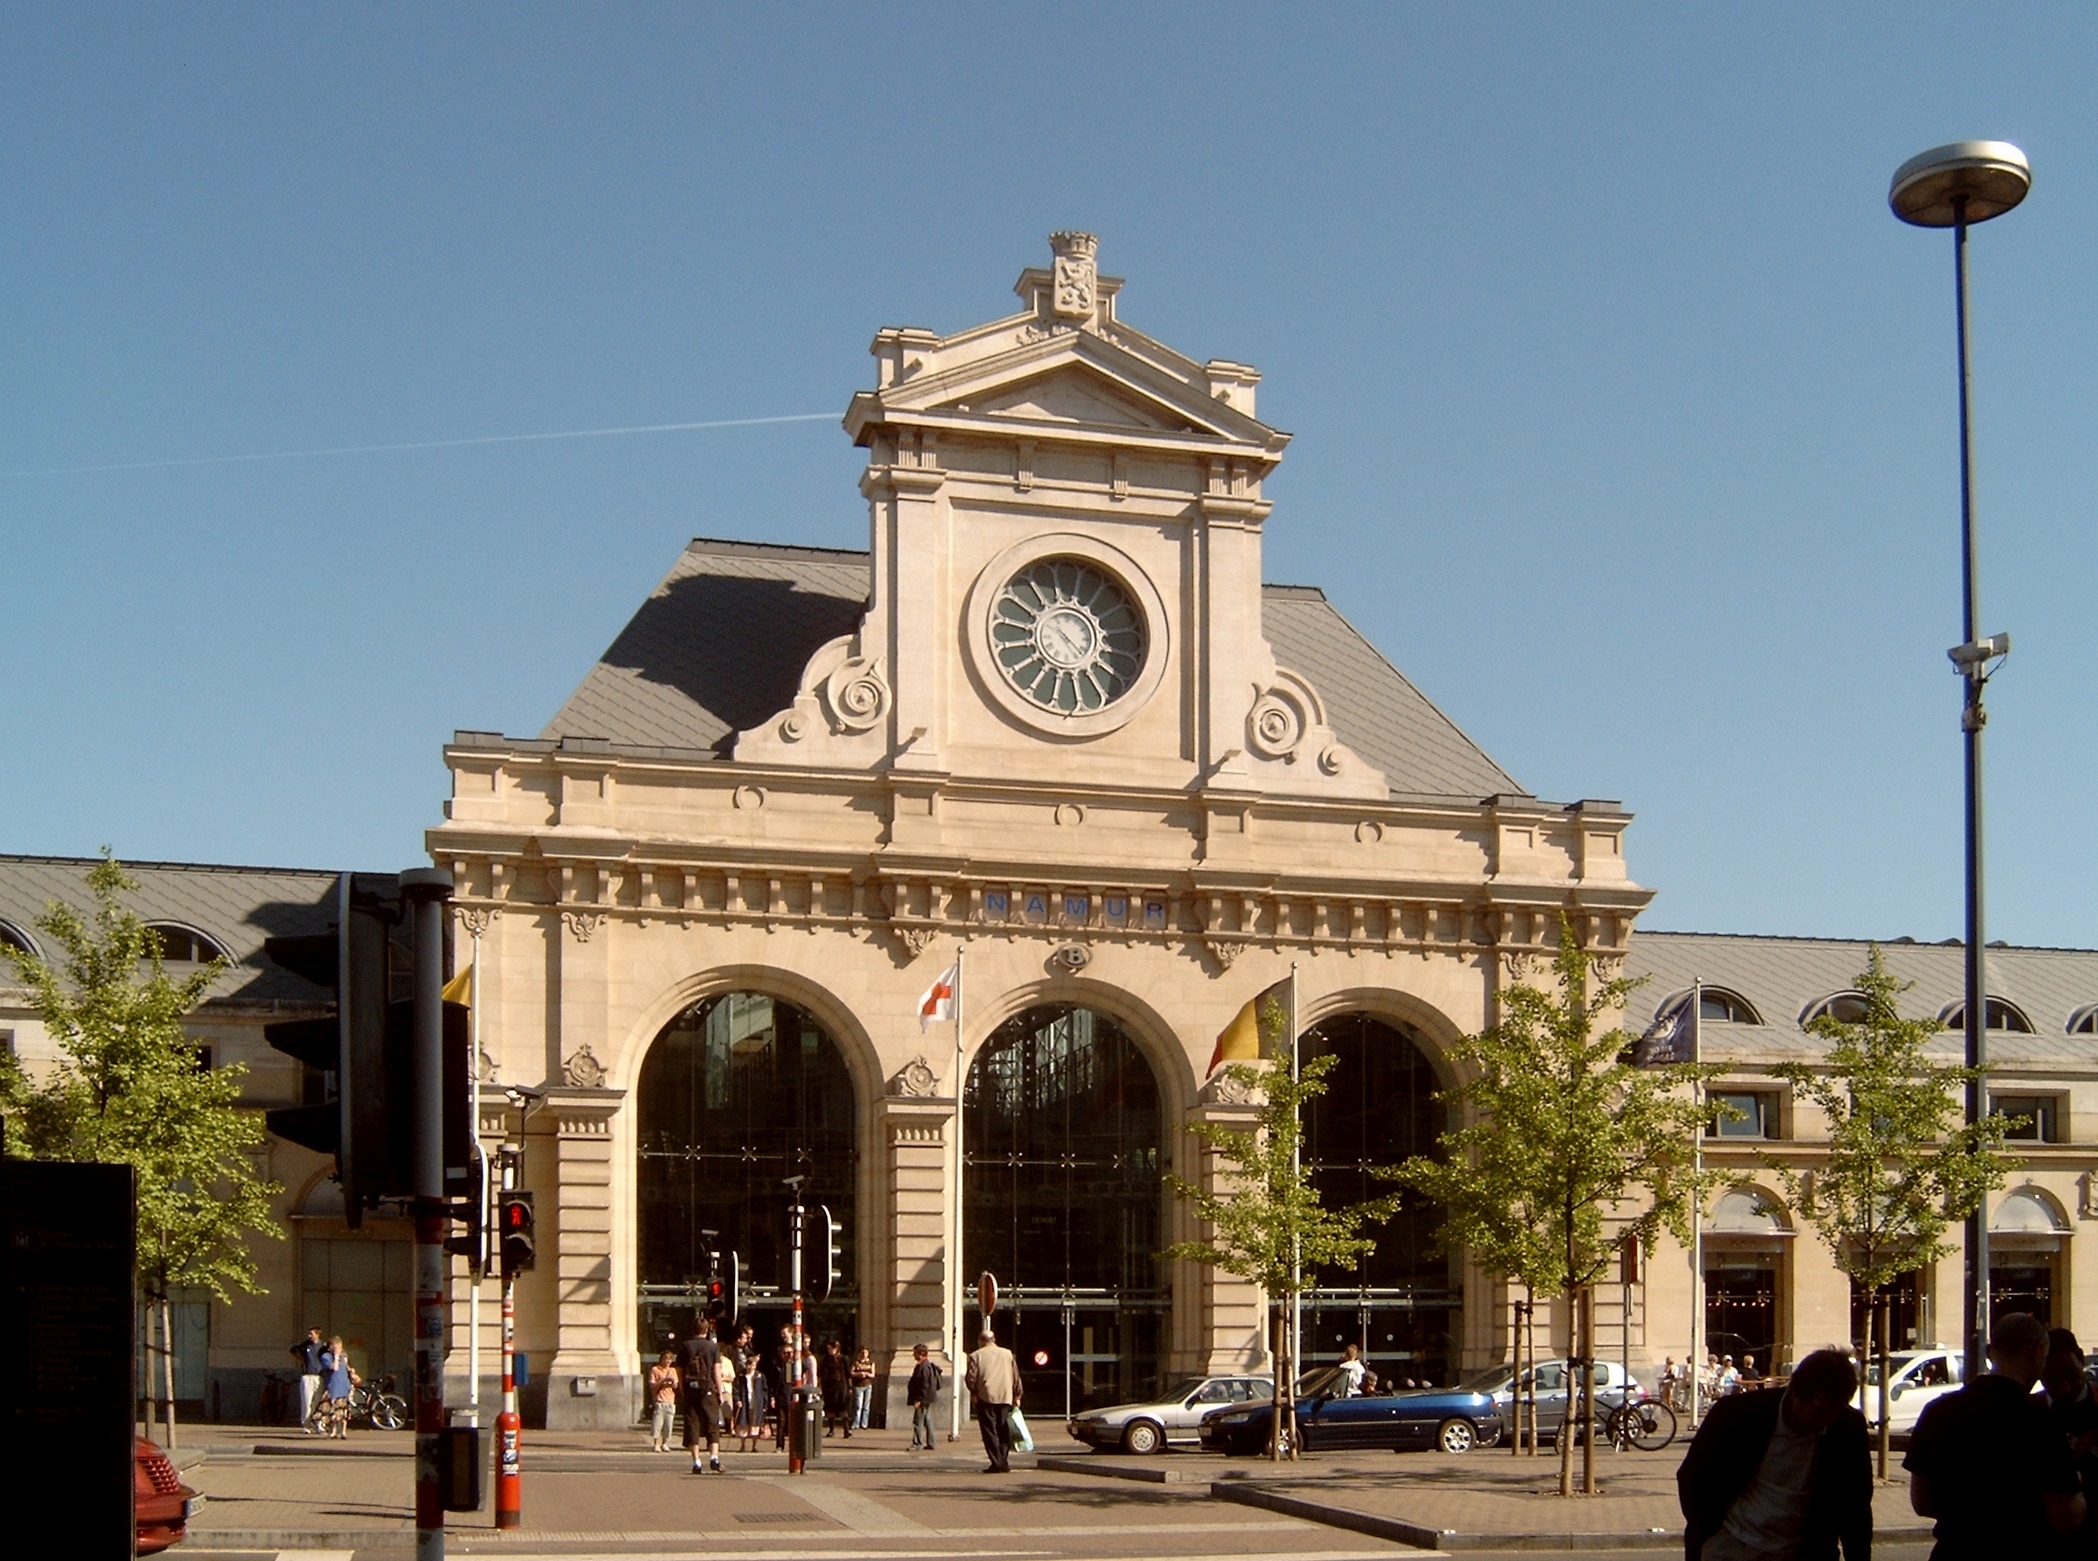 Station Namur